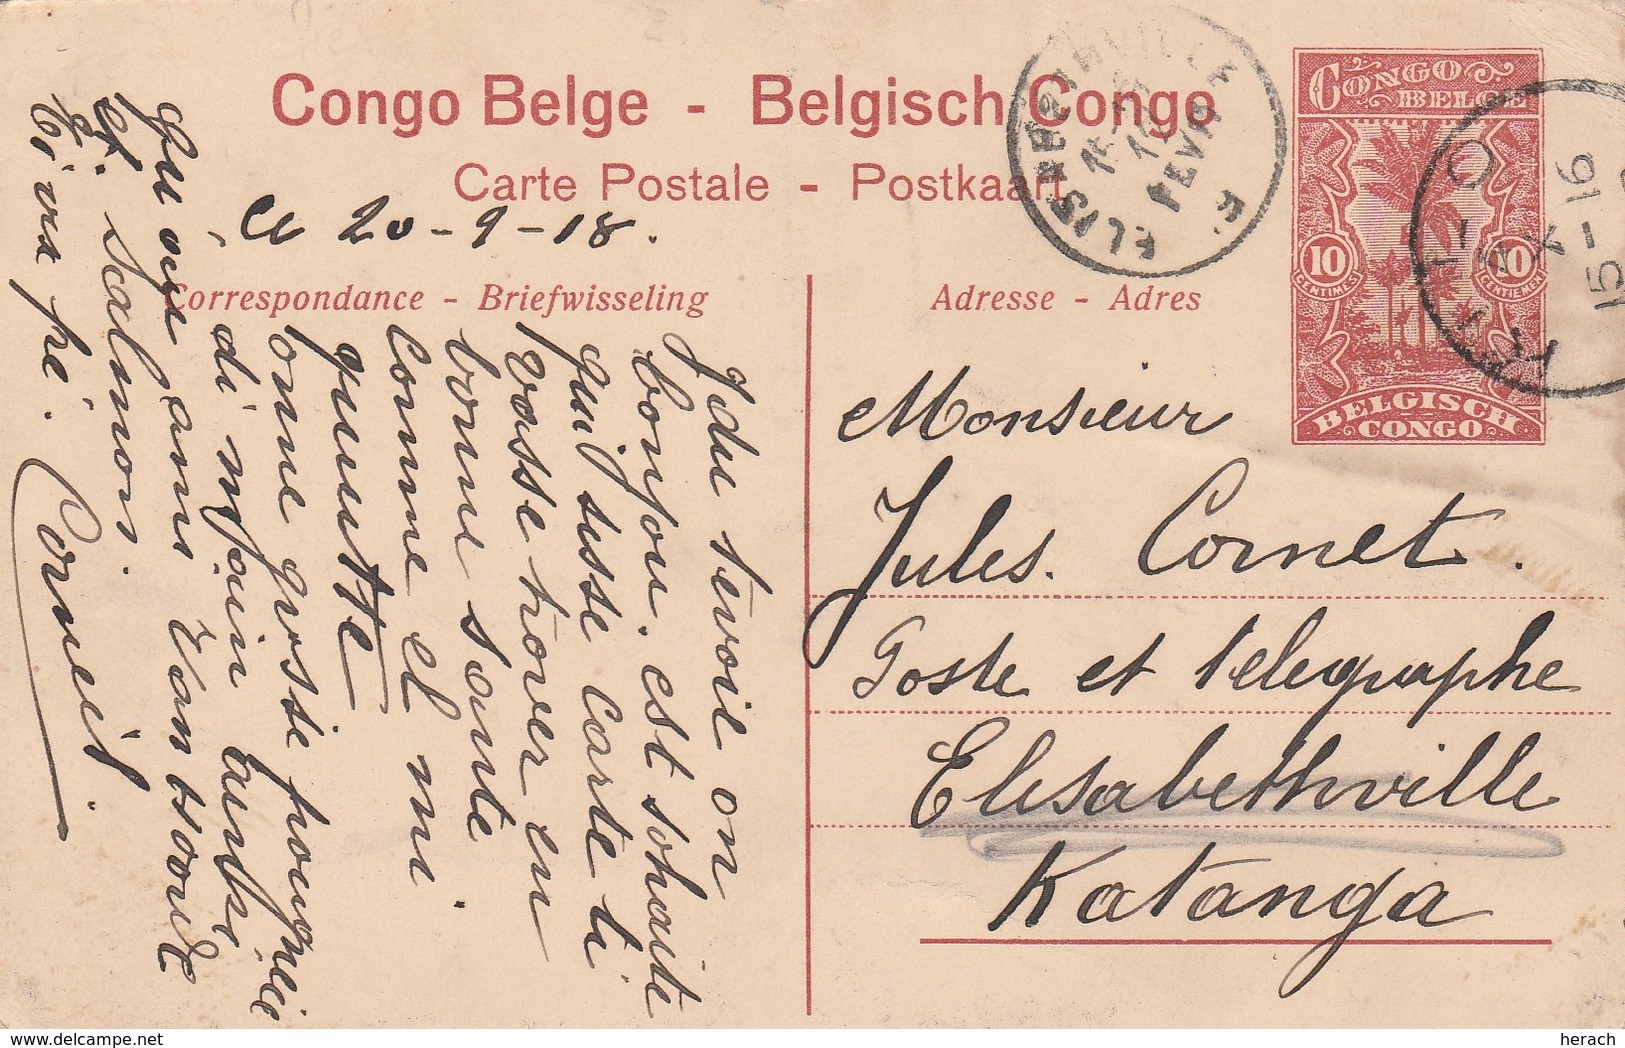 Congo Belge Entier Postal Illustré 1918 - Entiers Postaux